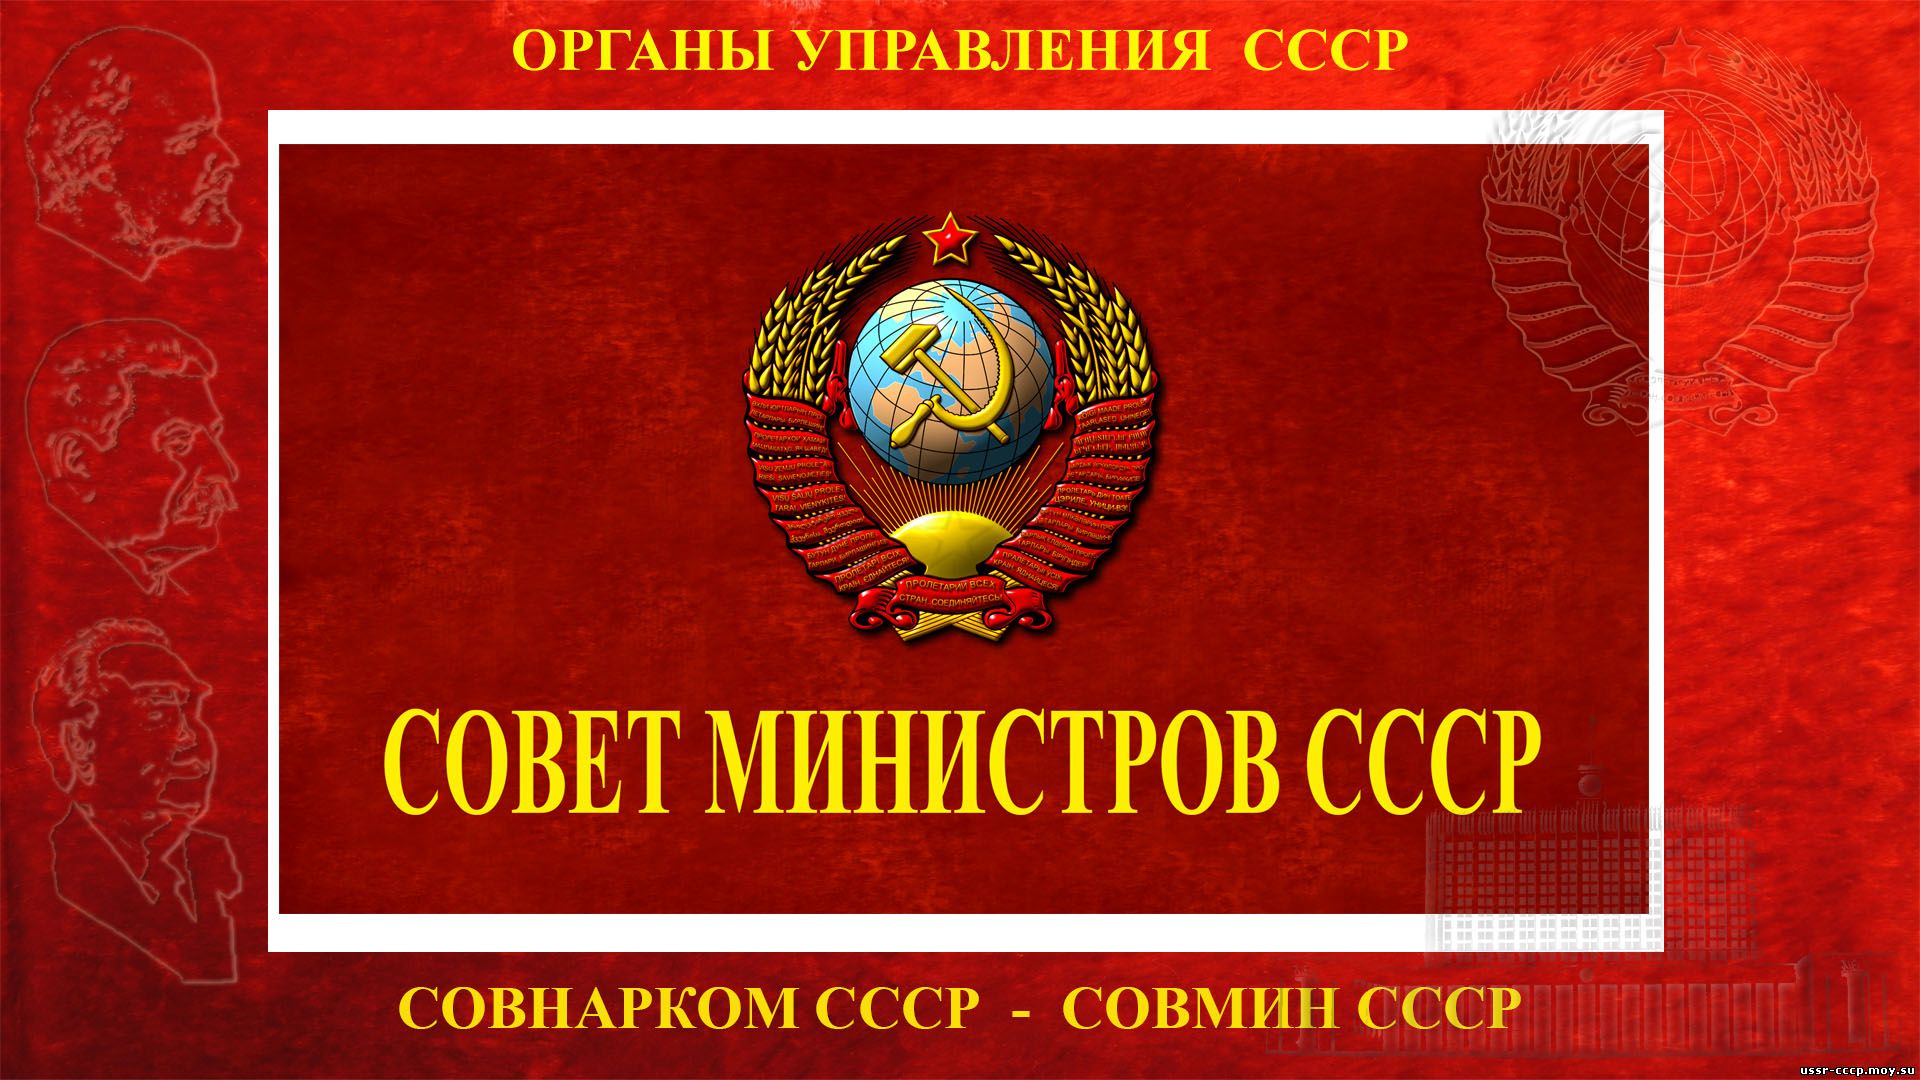 Совет министров СССР — (Совмин СССР) — Высший орган государственной власти СССР (1946—1991) (повествование)